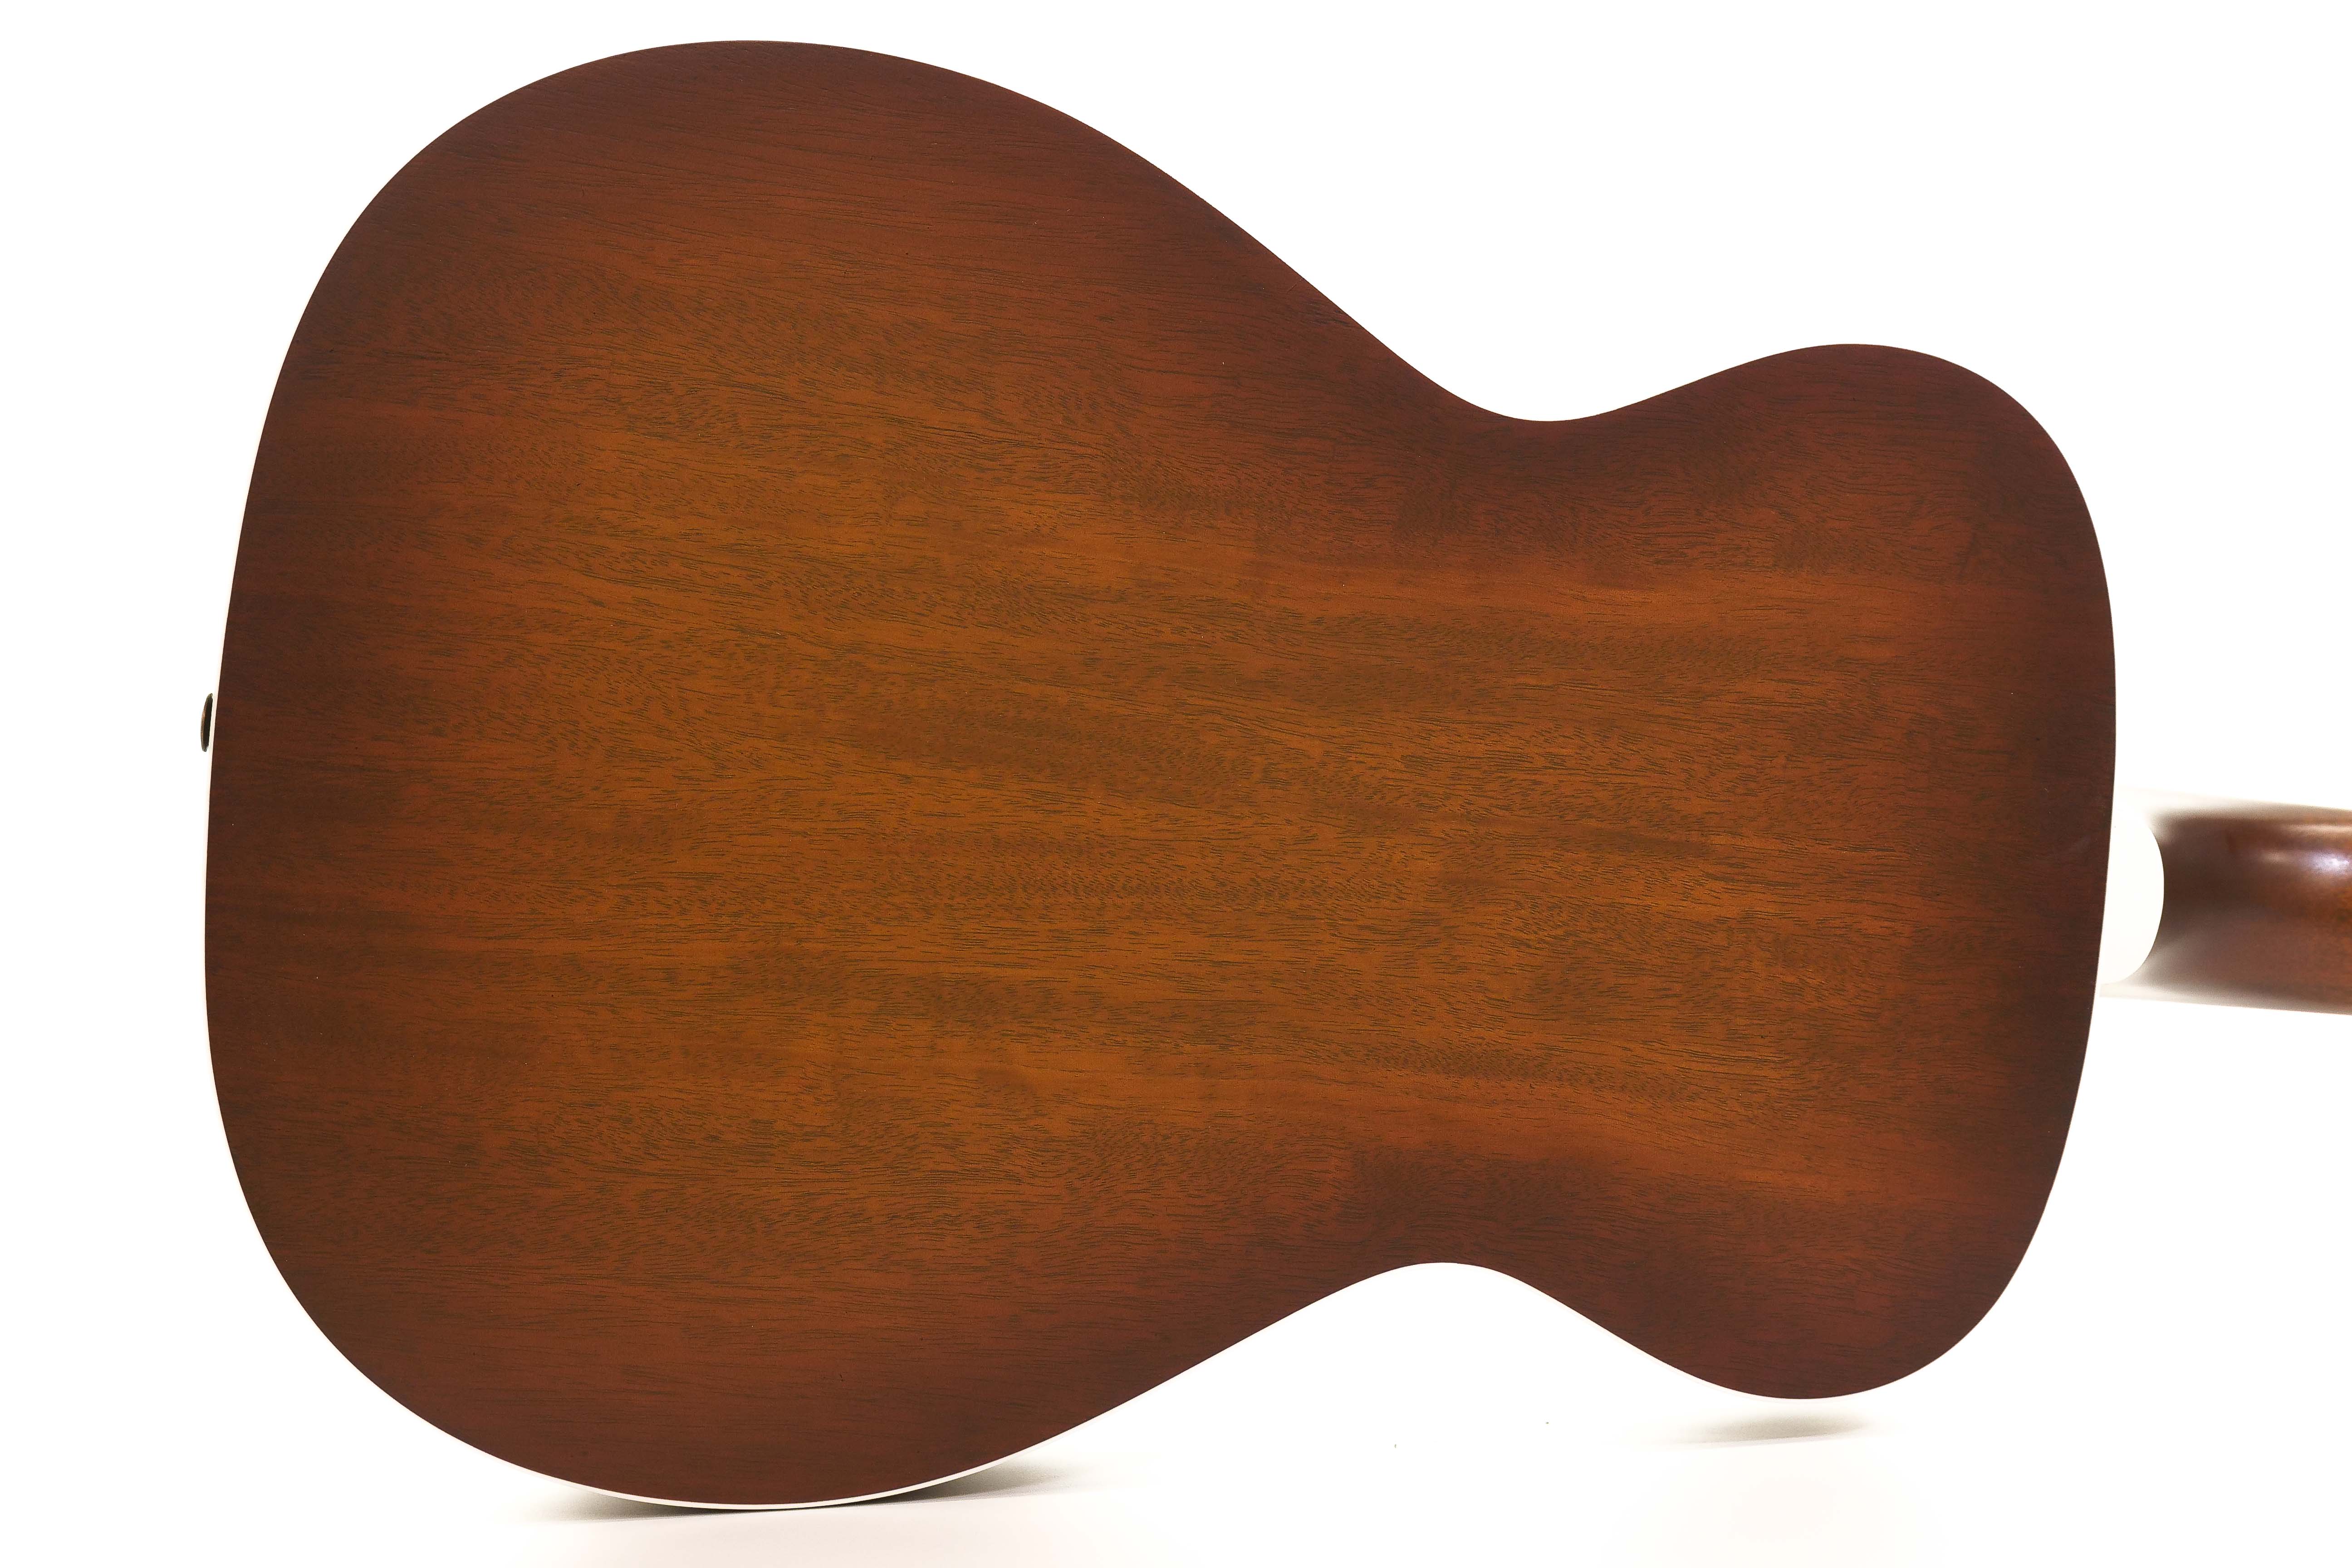 Guild M-25E Acoustic Guitar